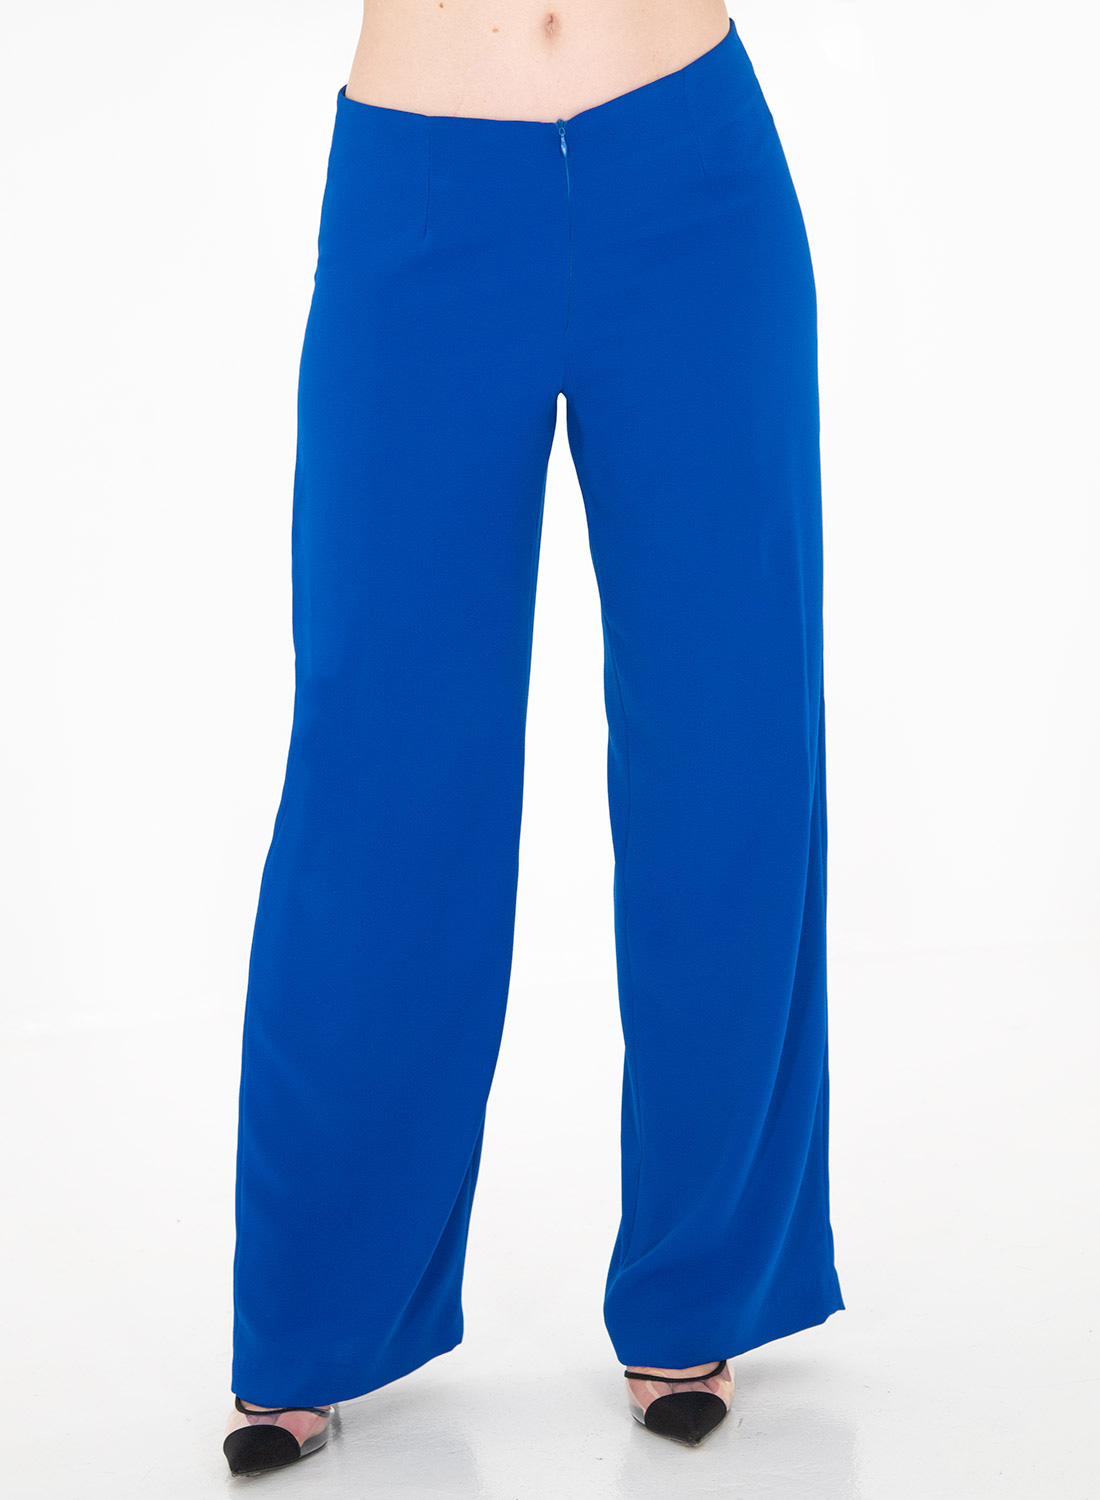 Κολακευτικό μπλε σετ με παντελόνα